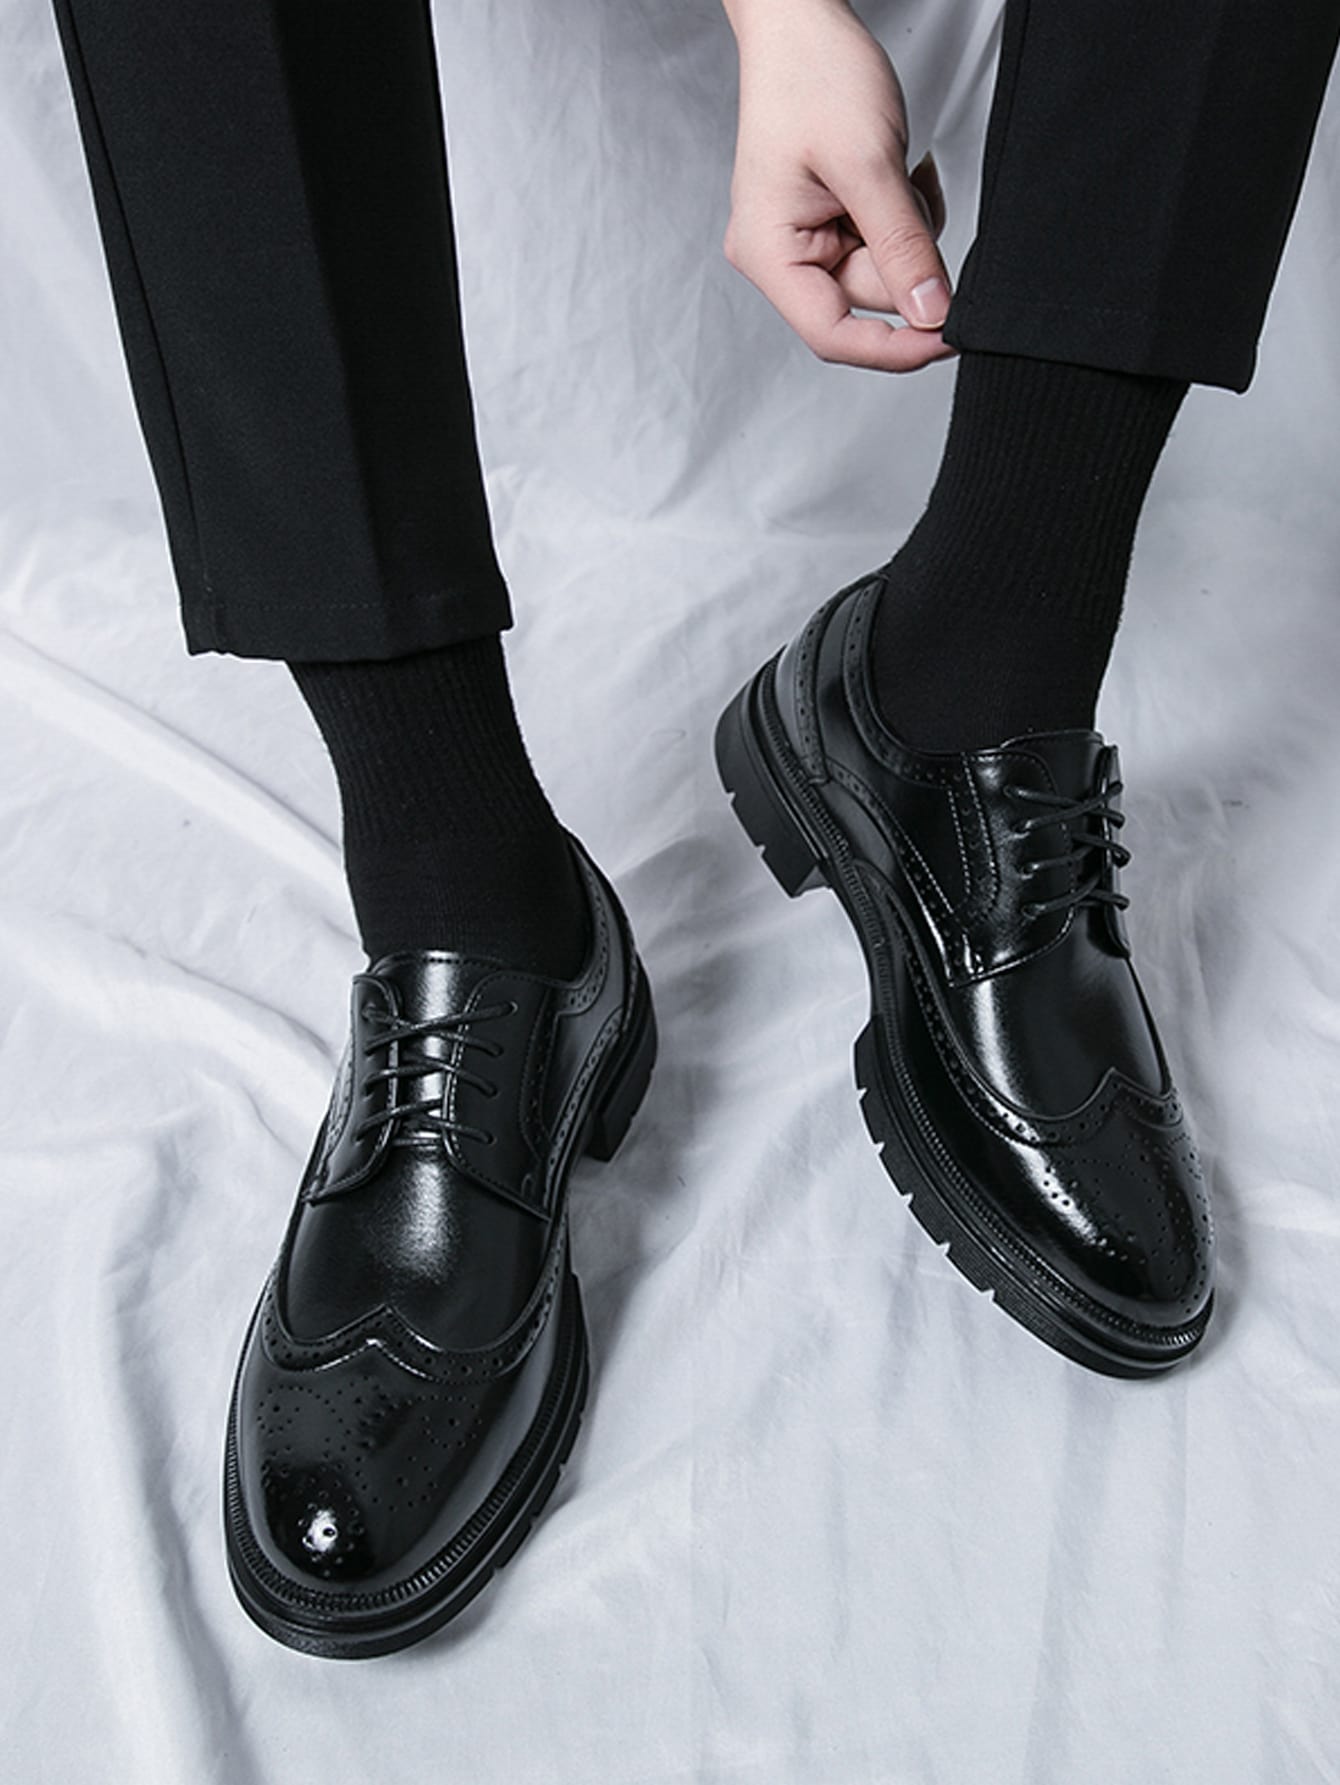 Мужские деловые модельные туфли Коричневые броги на шнуровке Свадебные туфли Обувь для жениха, черный